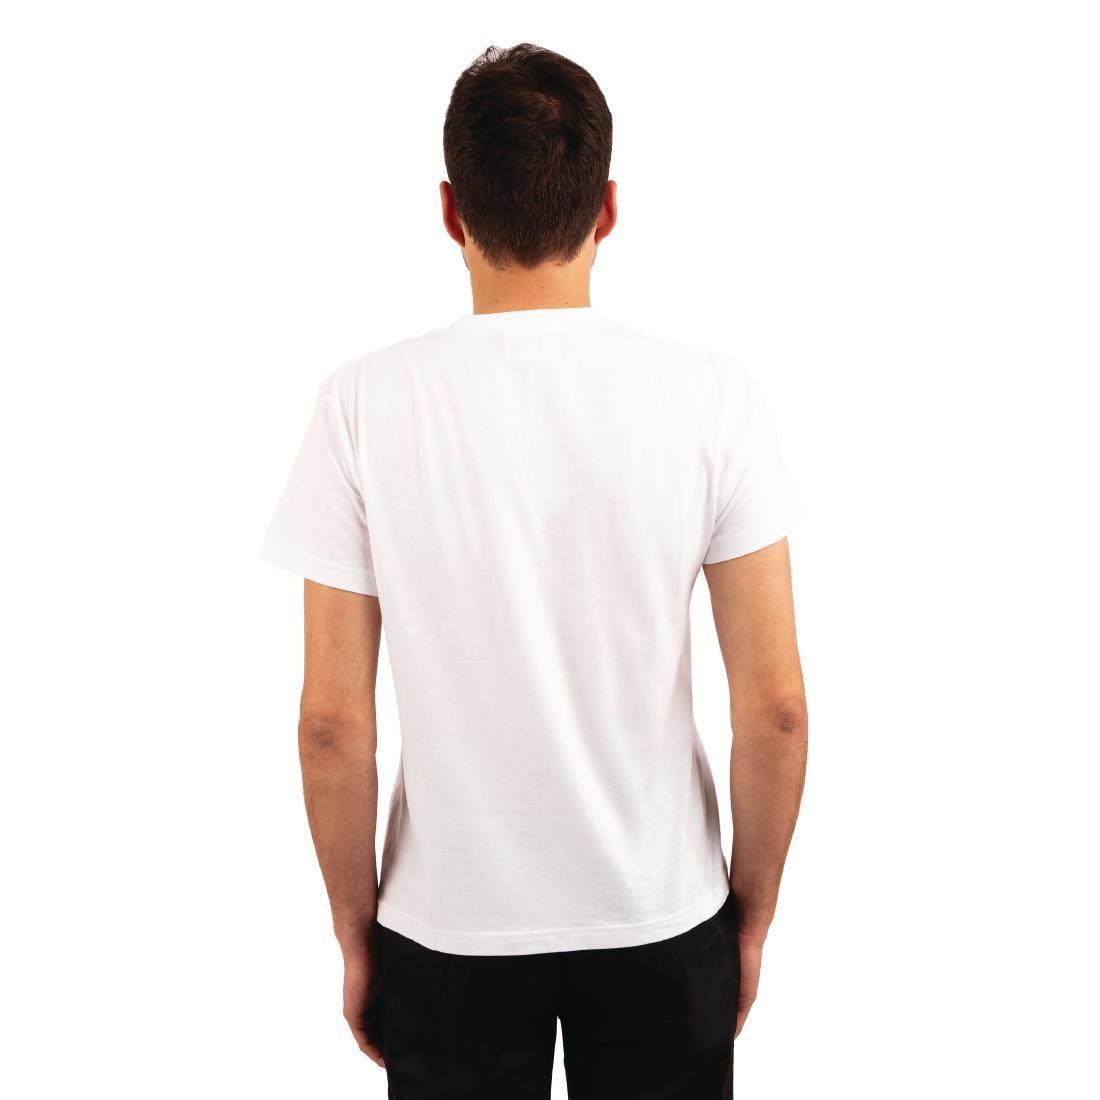 Unisex Chef T-Shirt White 4XL - A103-4XL  - 2